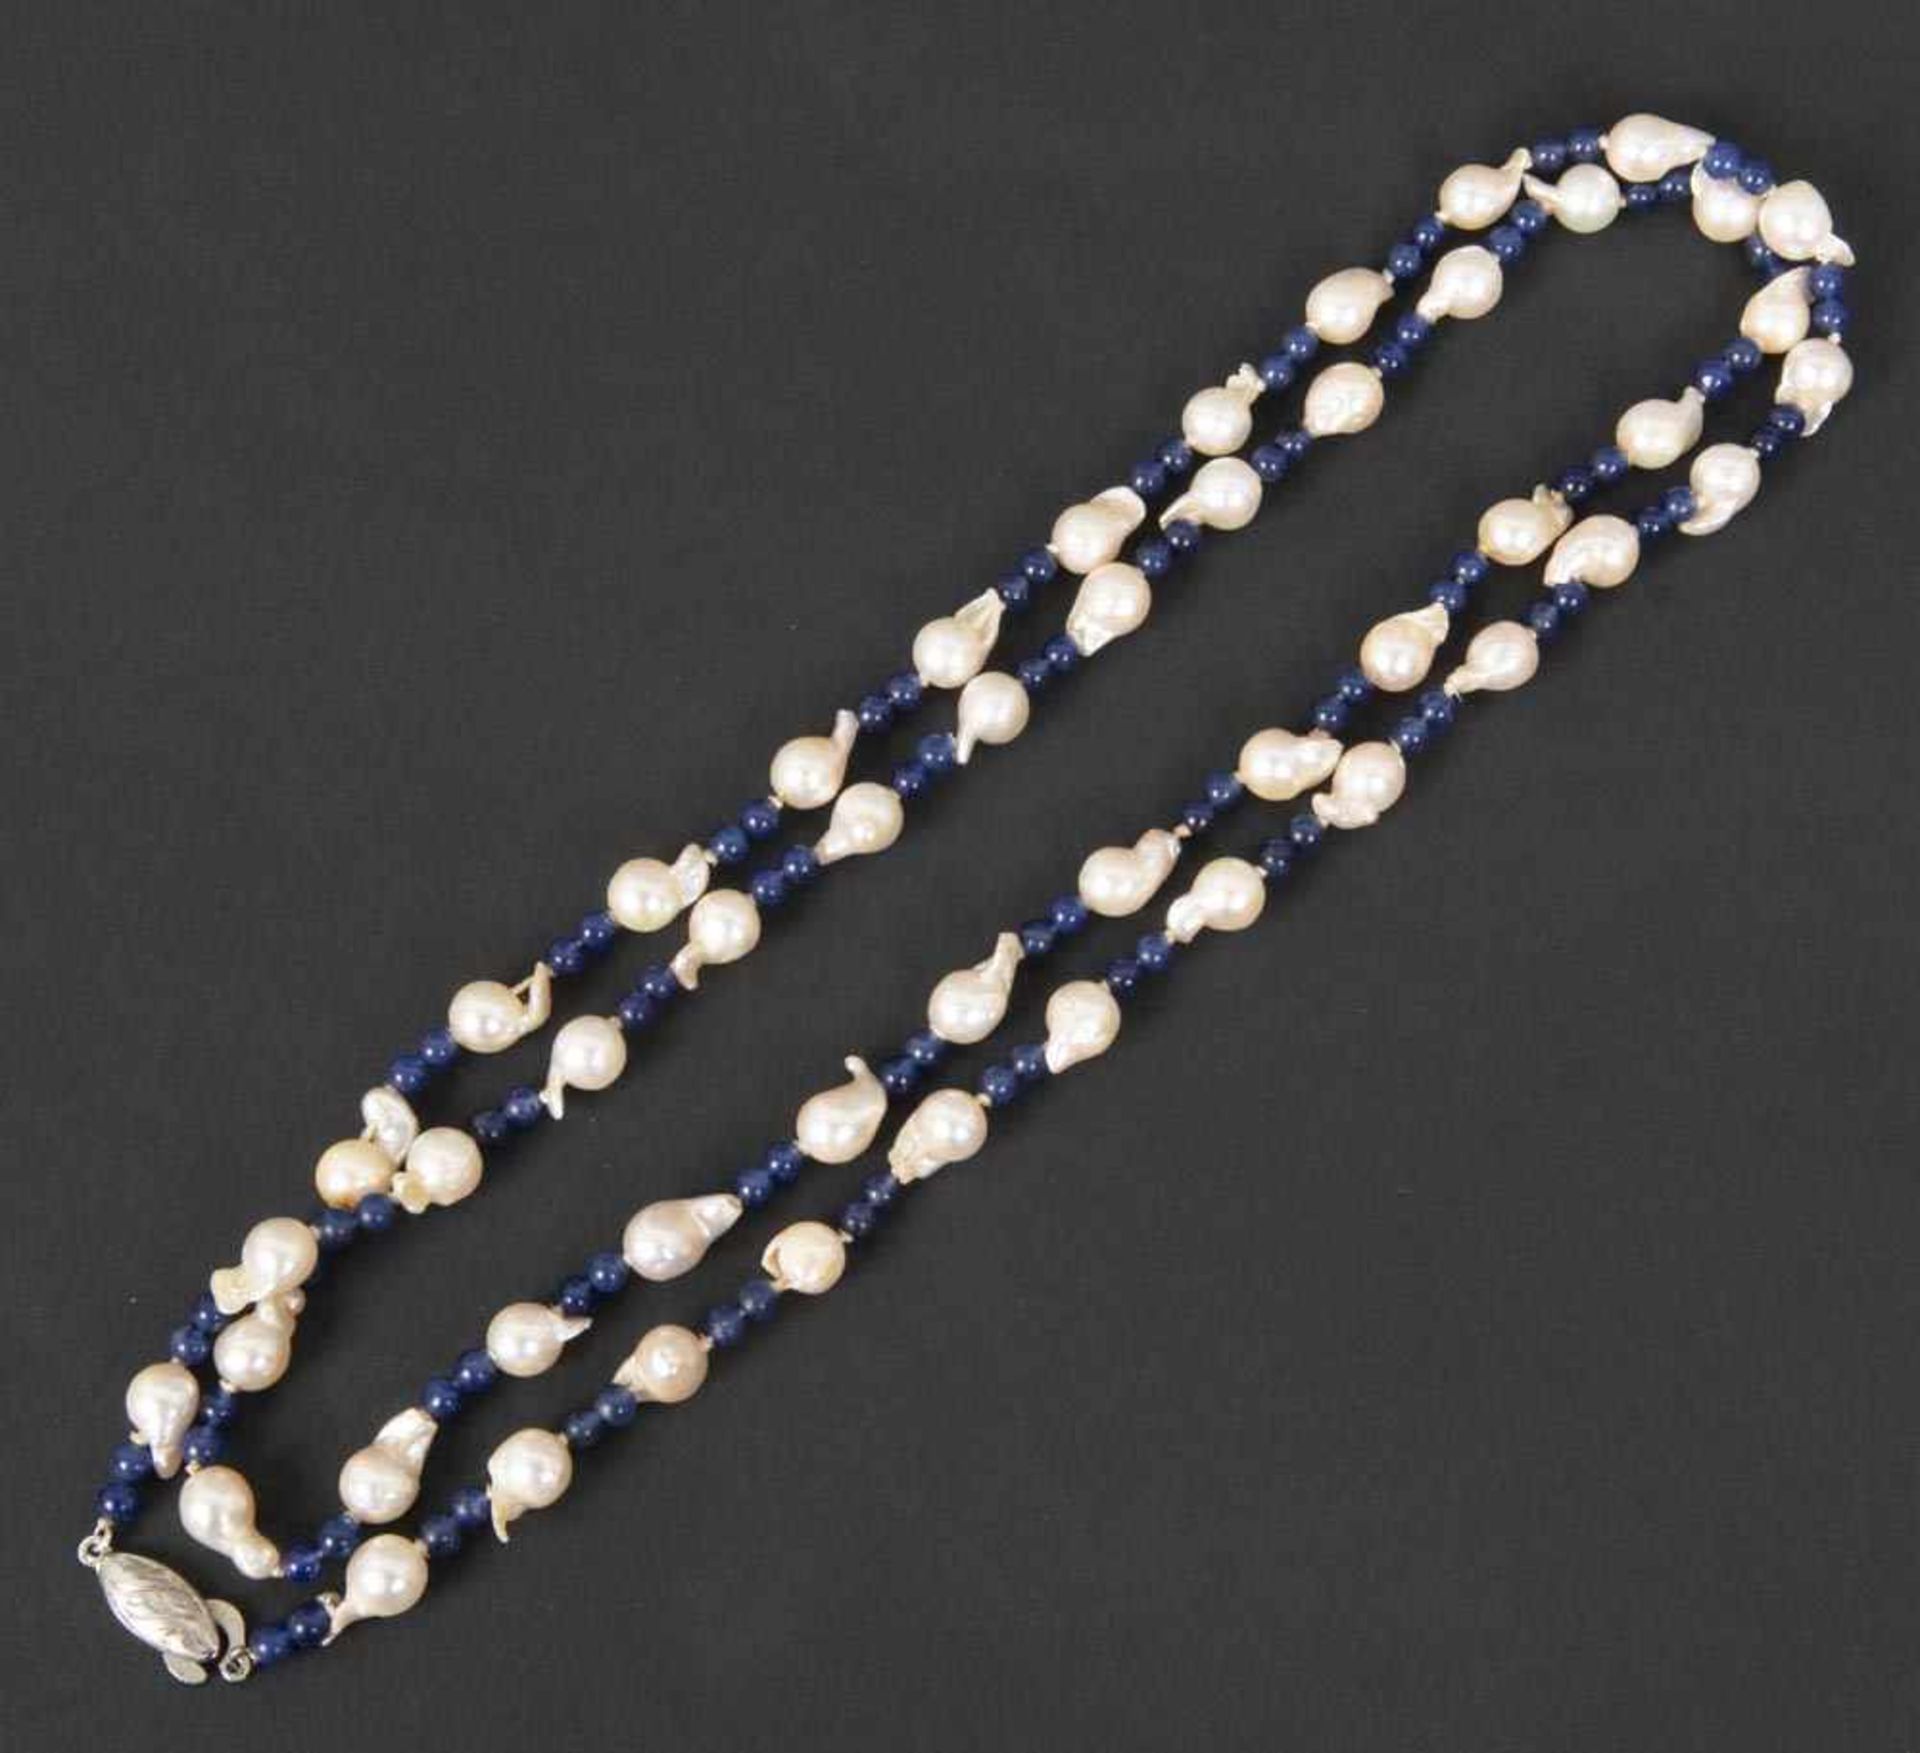 Halskette mit Perlen, Lapislazulikugeln und Silberverschluss, L=90 cm.- - -25.00 % buyer's premium